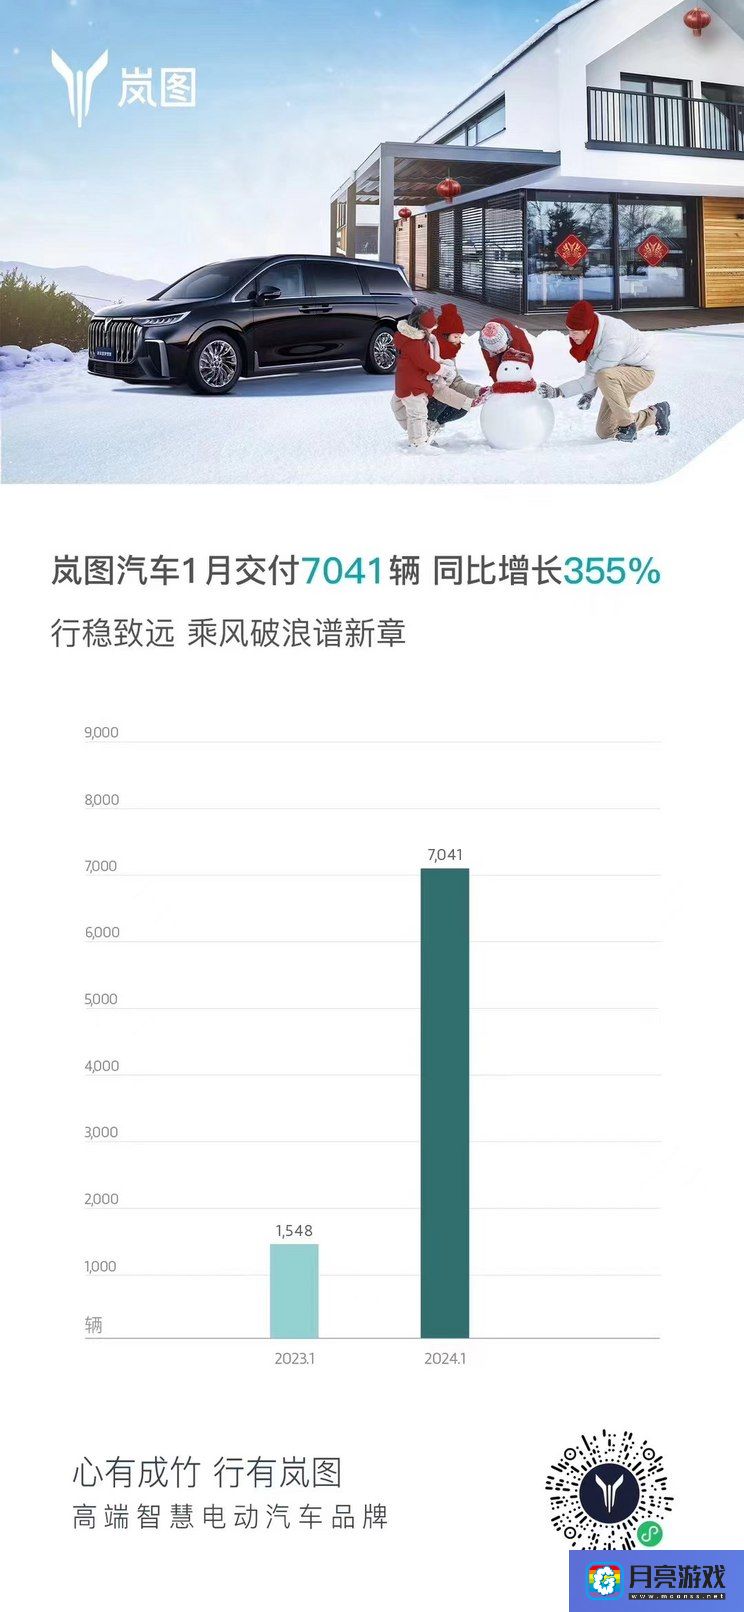 汽车-同比增长355% 岚图1月交付新车7041台-专题资讯